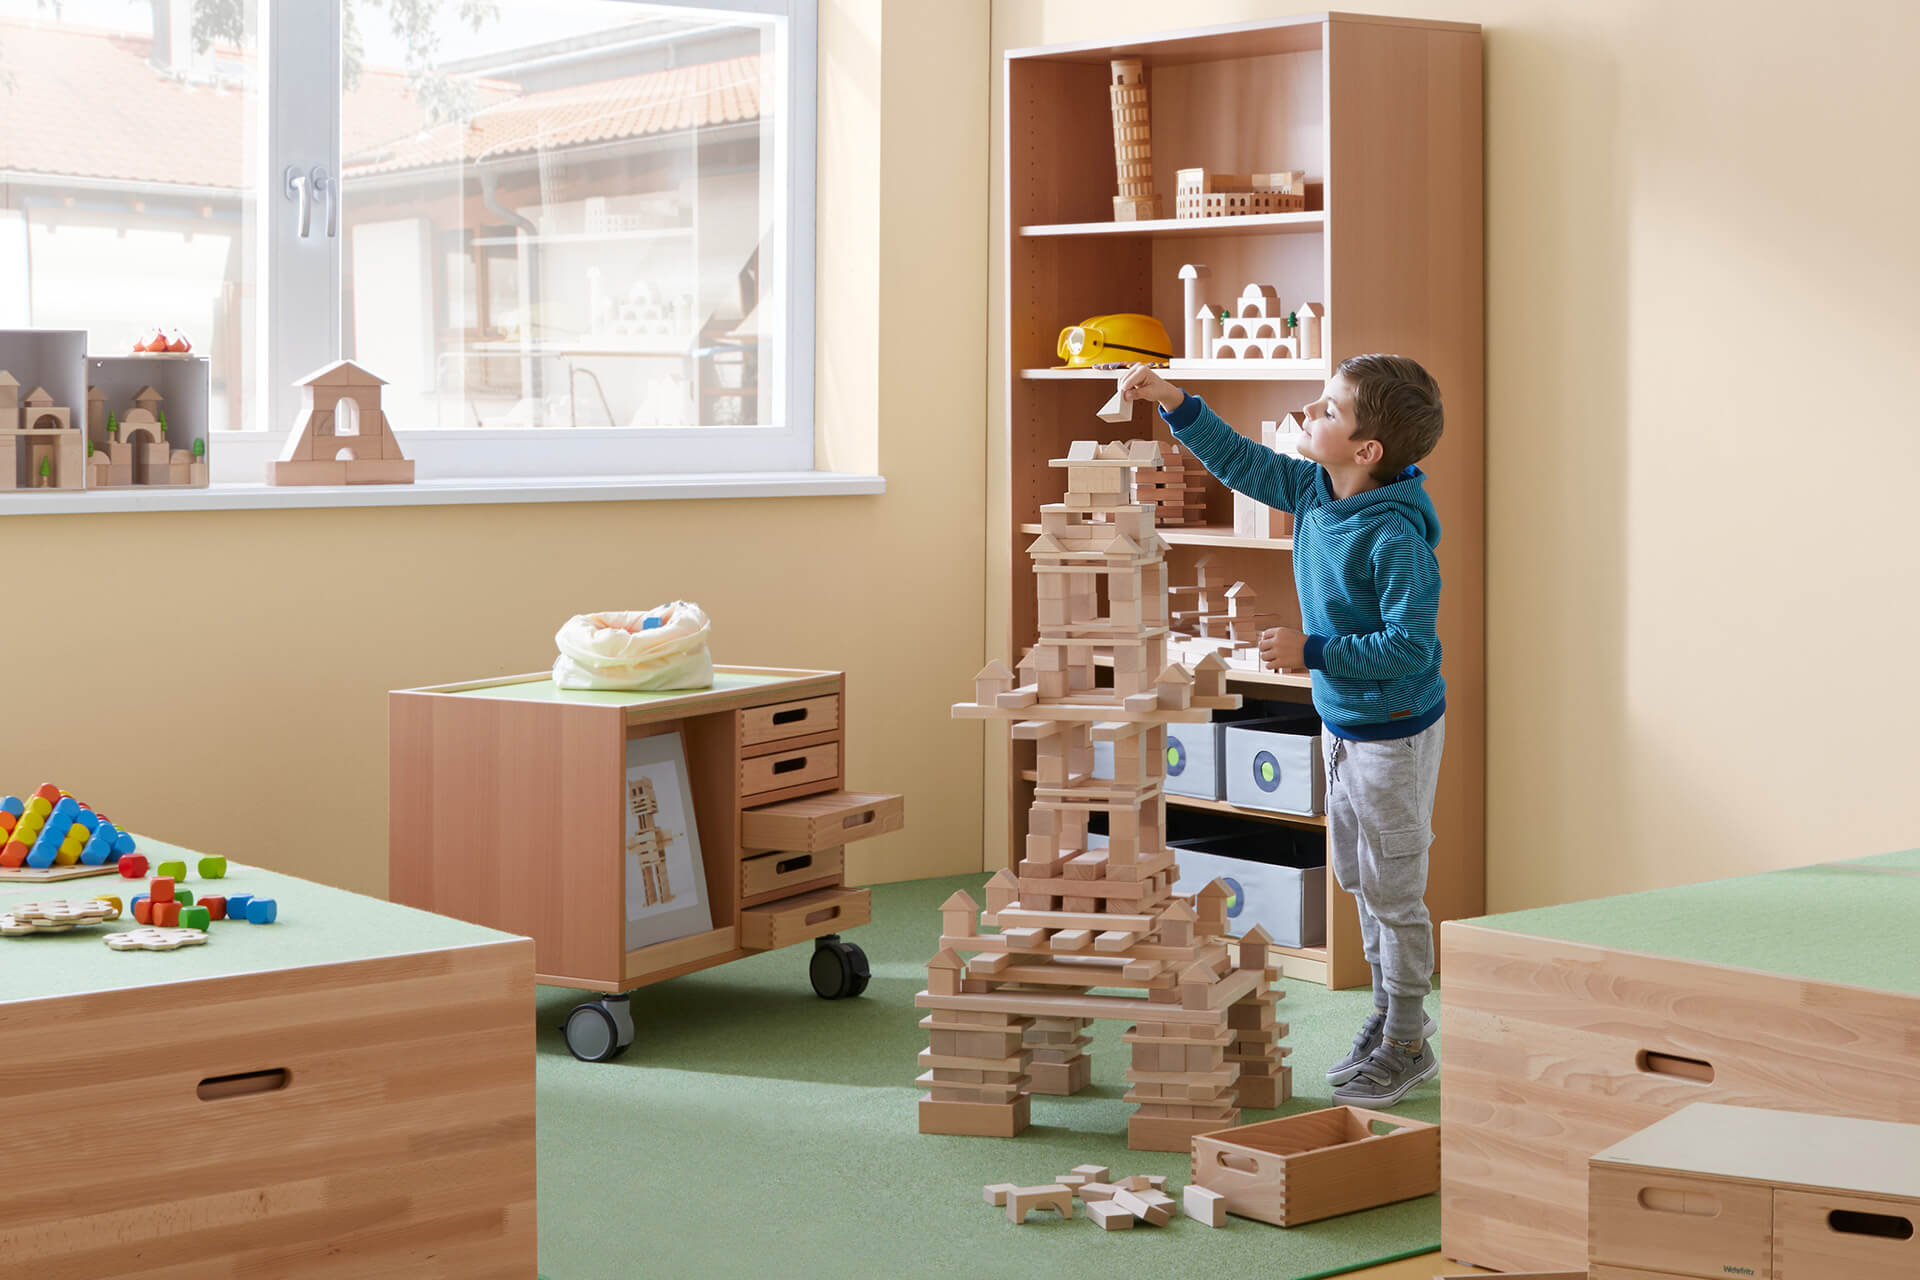 Freizeitraum | Grid | 2 | Spielen | Junge baut mit Holzbausteinen einen Turm 